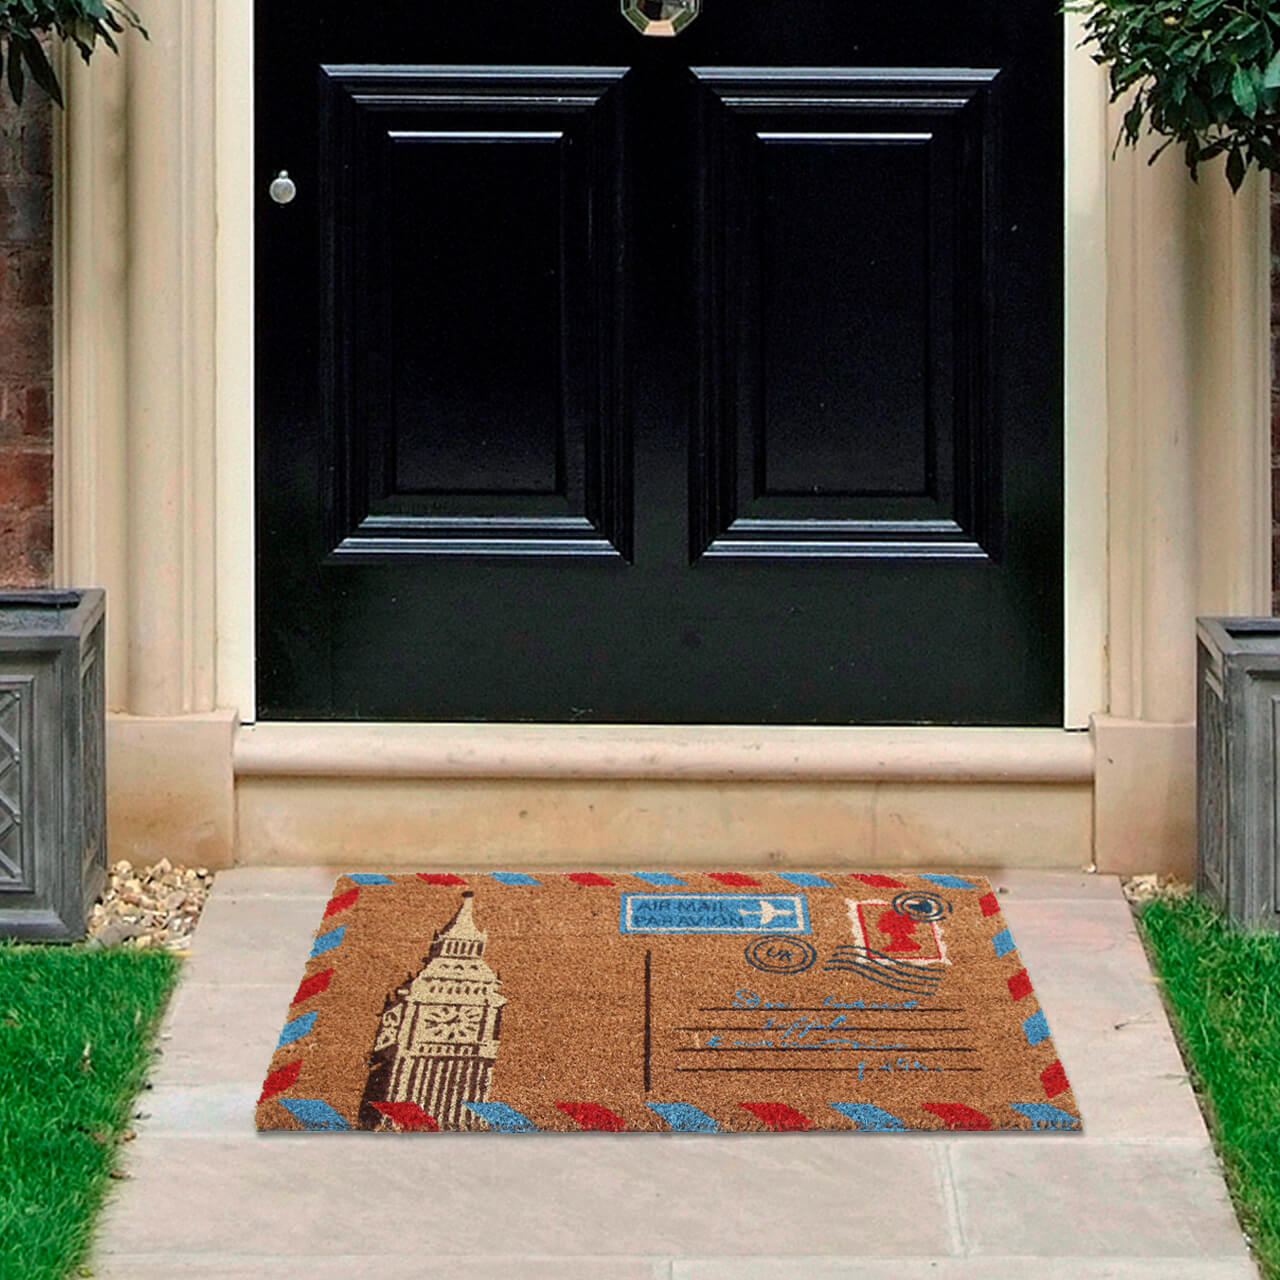 The Mail Postcard Doormat Doorway